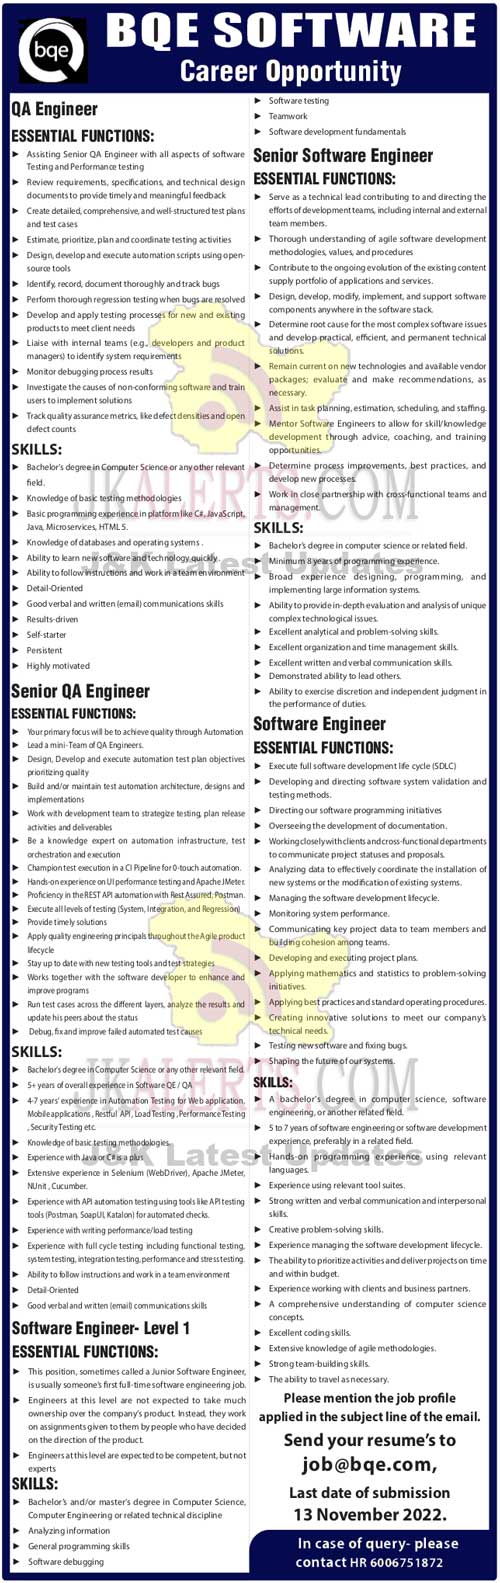 BQE Software Jobs Recruitment 2022.